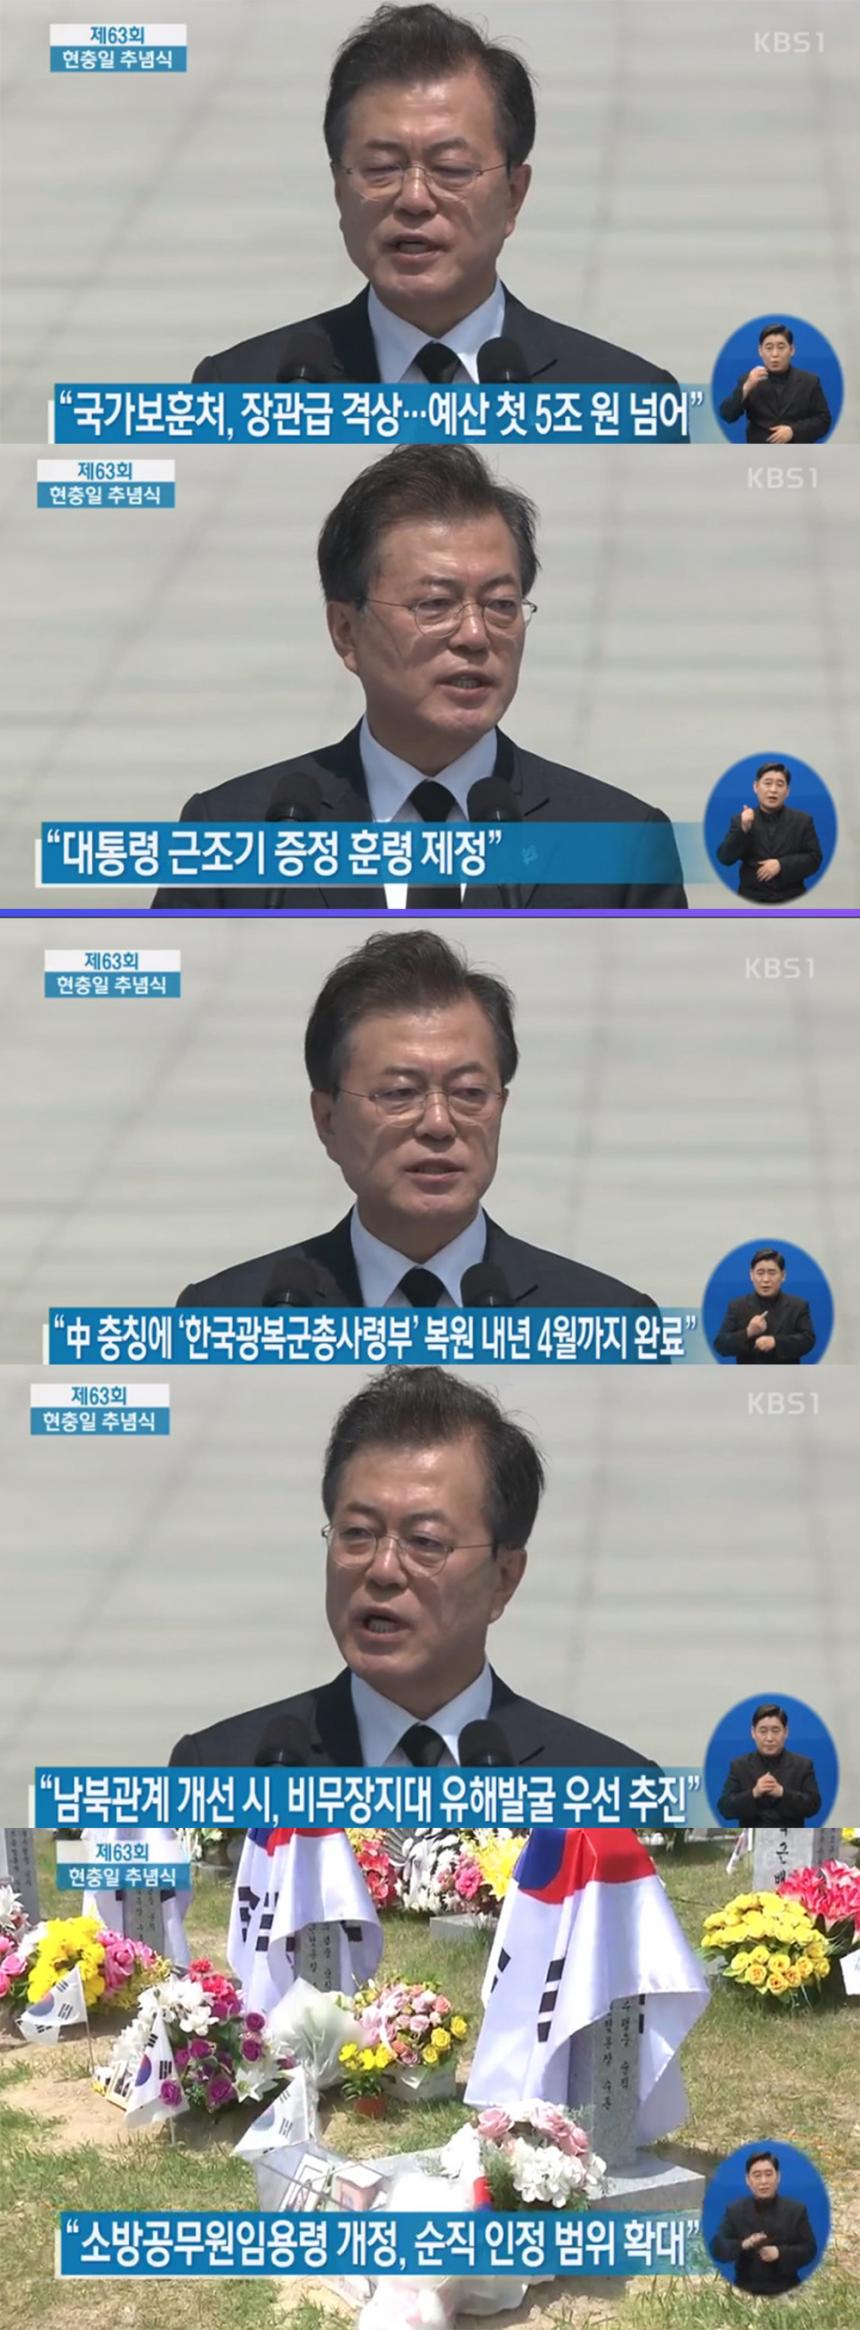 KBS 1TV 중계방송 ‘제63회 현충일 추념식’ 방송 캡처